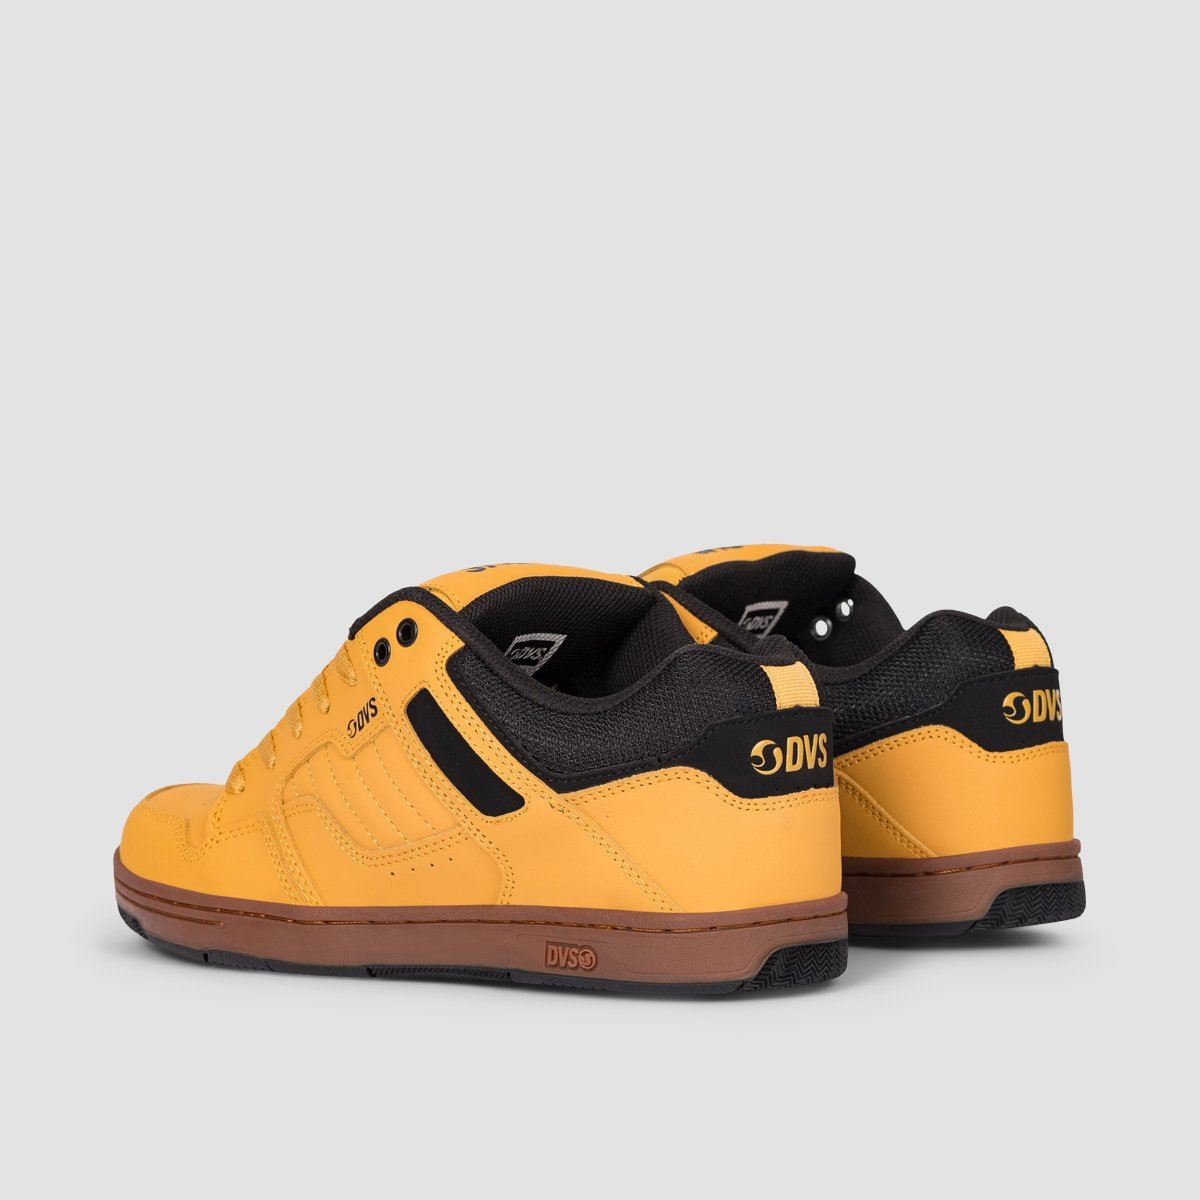 DVS Enduro 125 Shoes - Chamois/Black/Nubuck